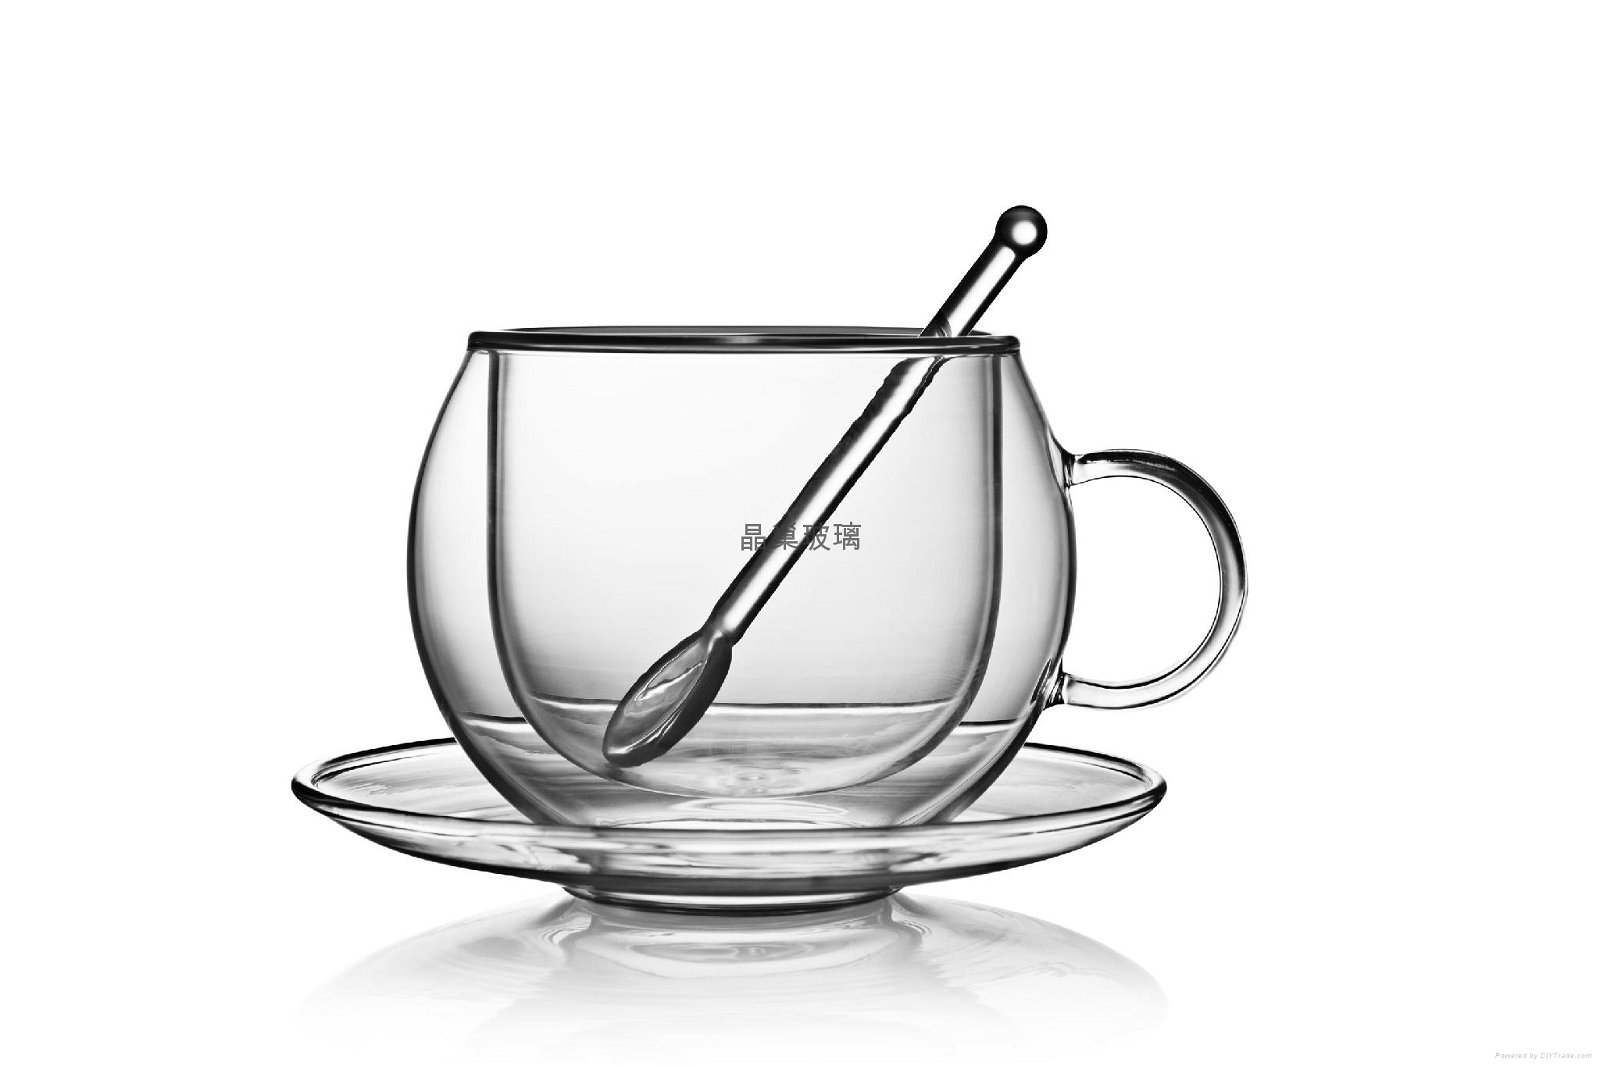 双层杯  茶具  耐热玻璃